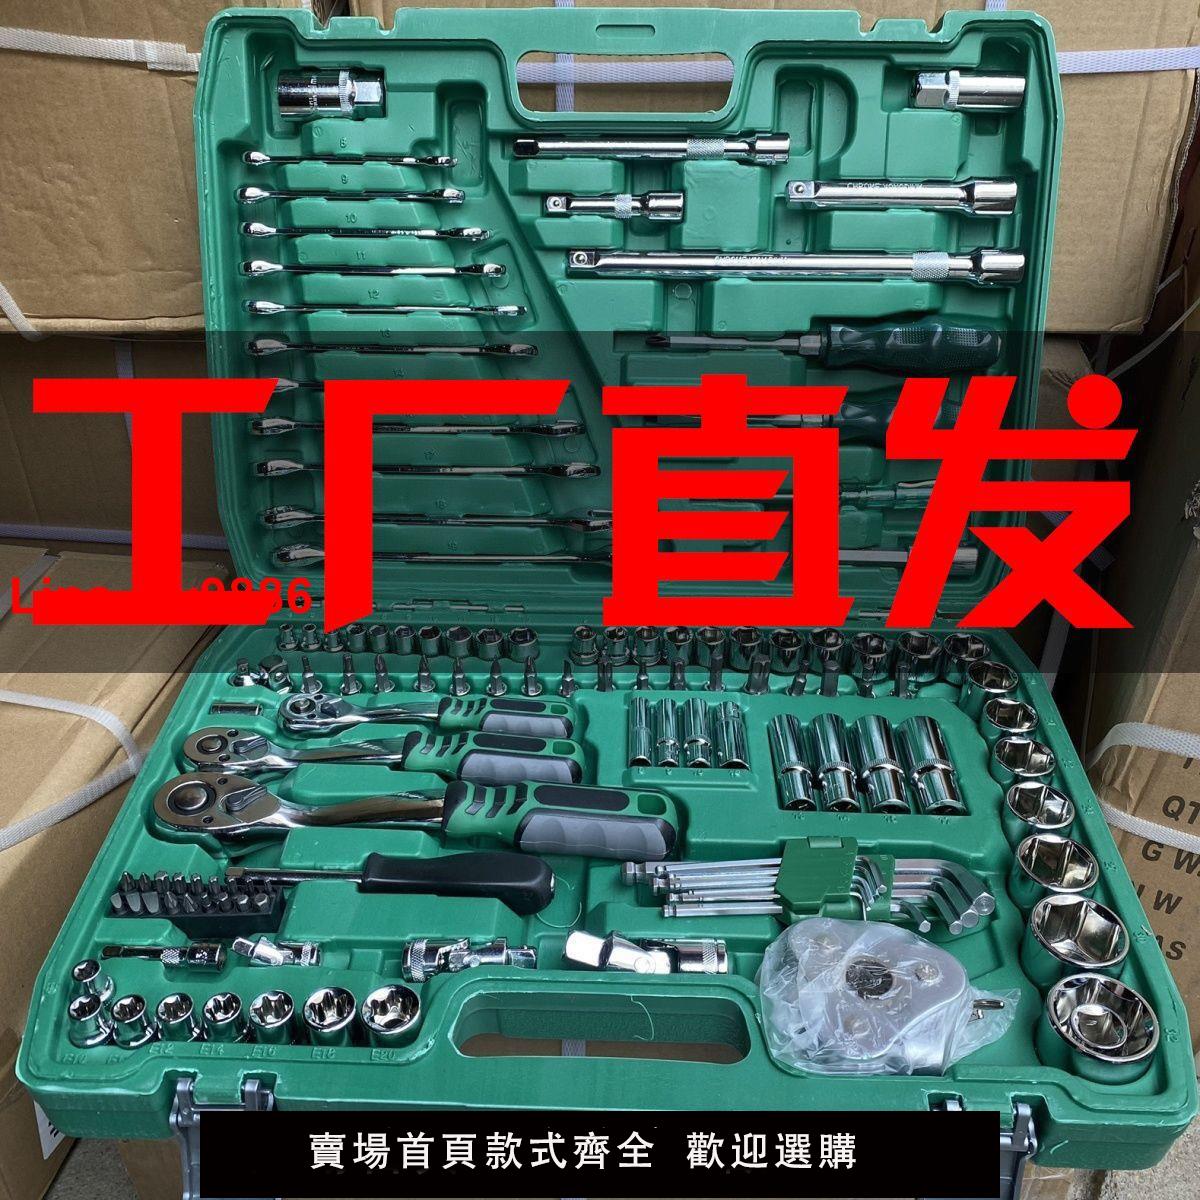 【台灣公司 超低價】121件套汽修工具套裝汽車維修組套套筒扳手組合工具維修工具修車